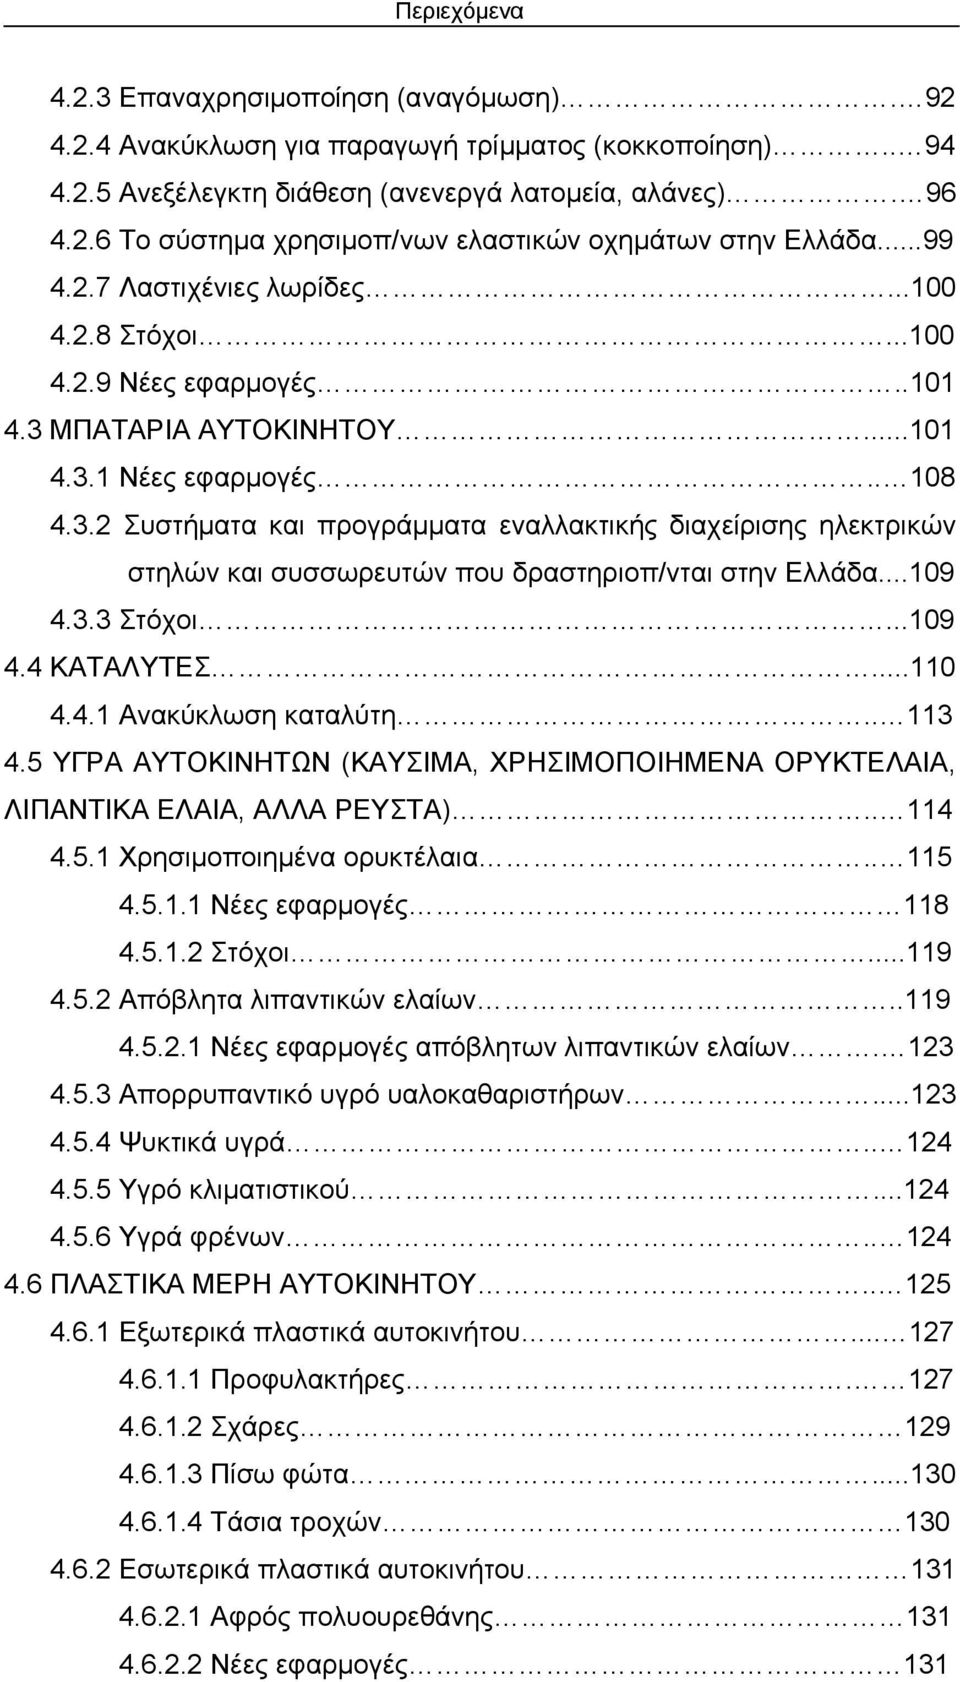 ΜΠΑΤΑΡΙΑ ΑΥΤΟΚΙΝΗΤΟΥ...101 4.3.1 Νέες εφαρμογές.. 108 4.3.2 Συστήματα και προγράμματα εναλλακτικής διαχείρισης ηλεκτρικών στηλών και συσσωρευτών που δραστηριοπ/νται στην Ελλάδα...109 4.3.3 Στόχοι.